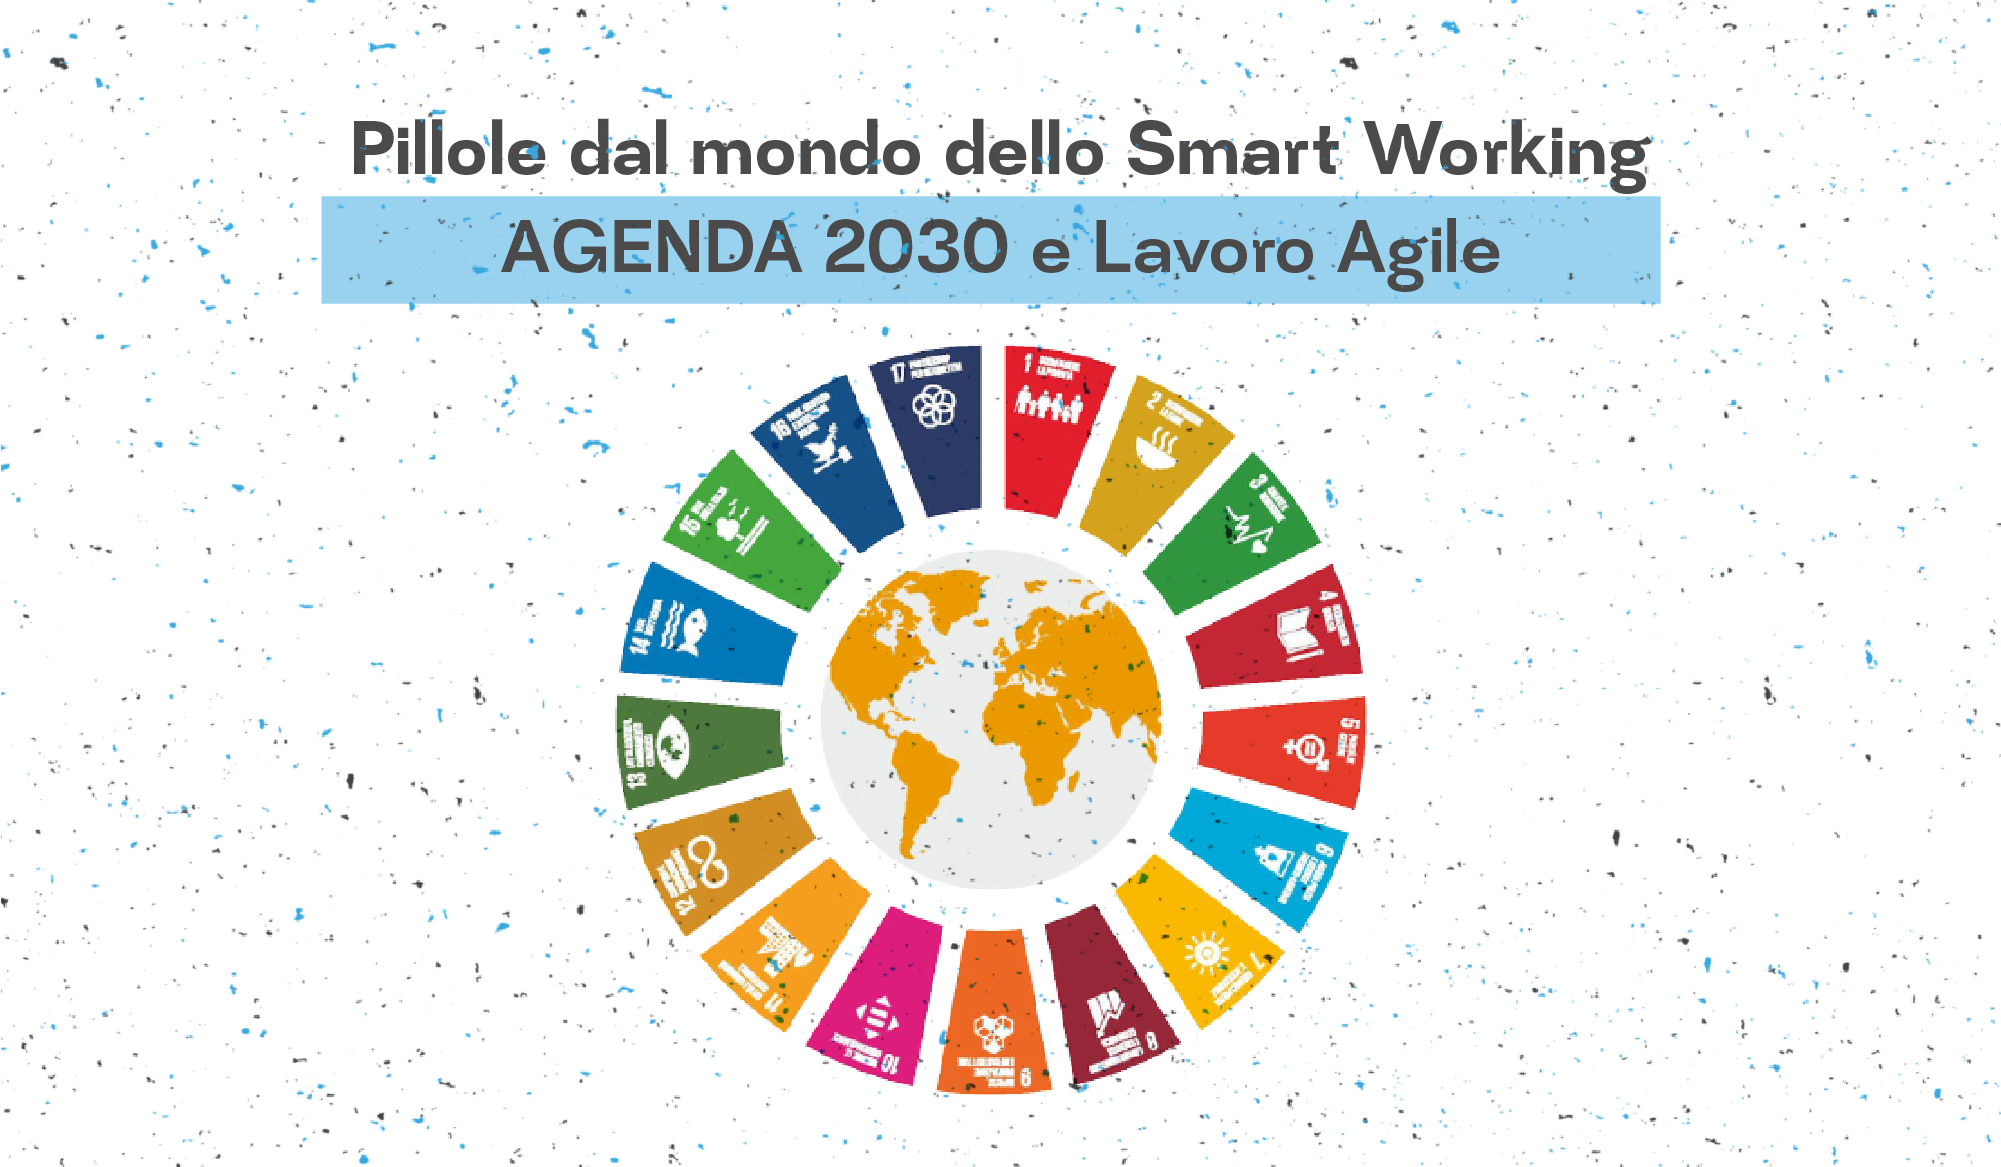 NotOnlyDesk e Agenda 2030: gli obiettivi